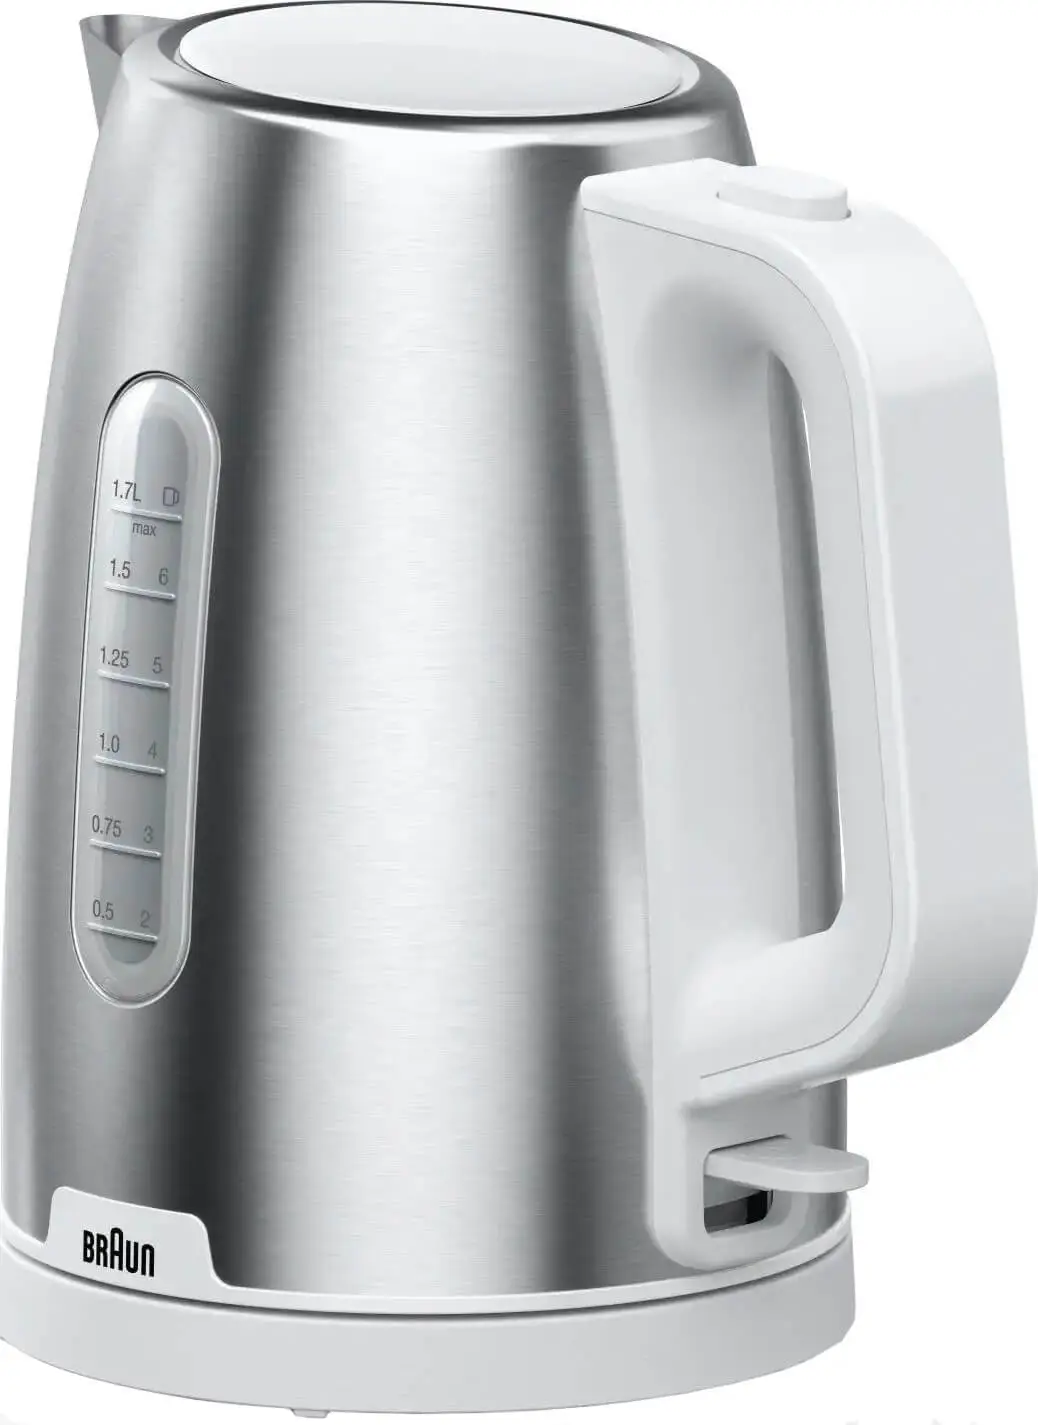 Чайник электрический Braun WK1500WH 1.7 л белый, серебристый фен щетка braun as330 400вт серебристый